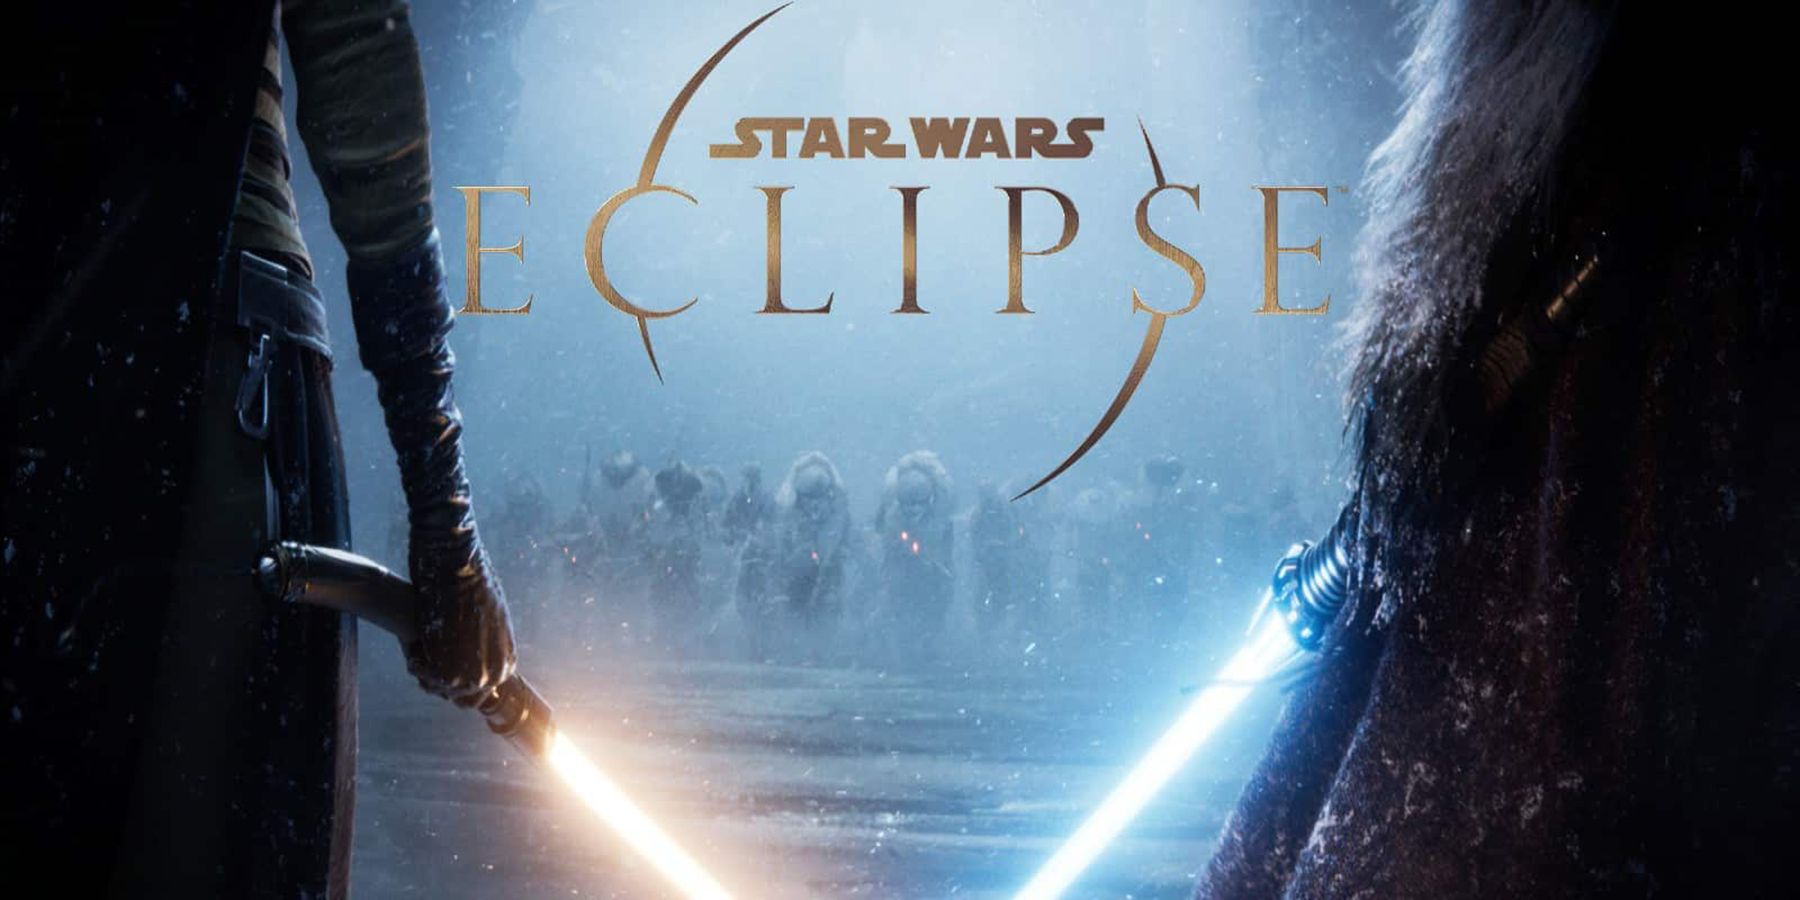 Les problèmes avec Star Wars Eclipse sont devenus connus. On ne sait pas pour le moment ce qu'il fera après avoir quitté le poste